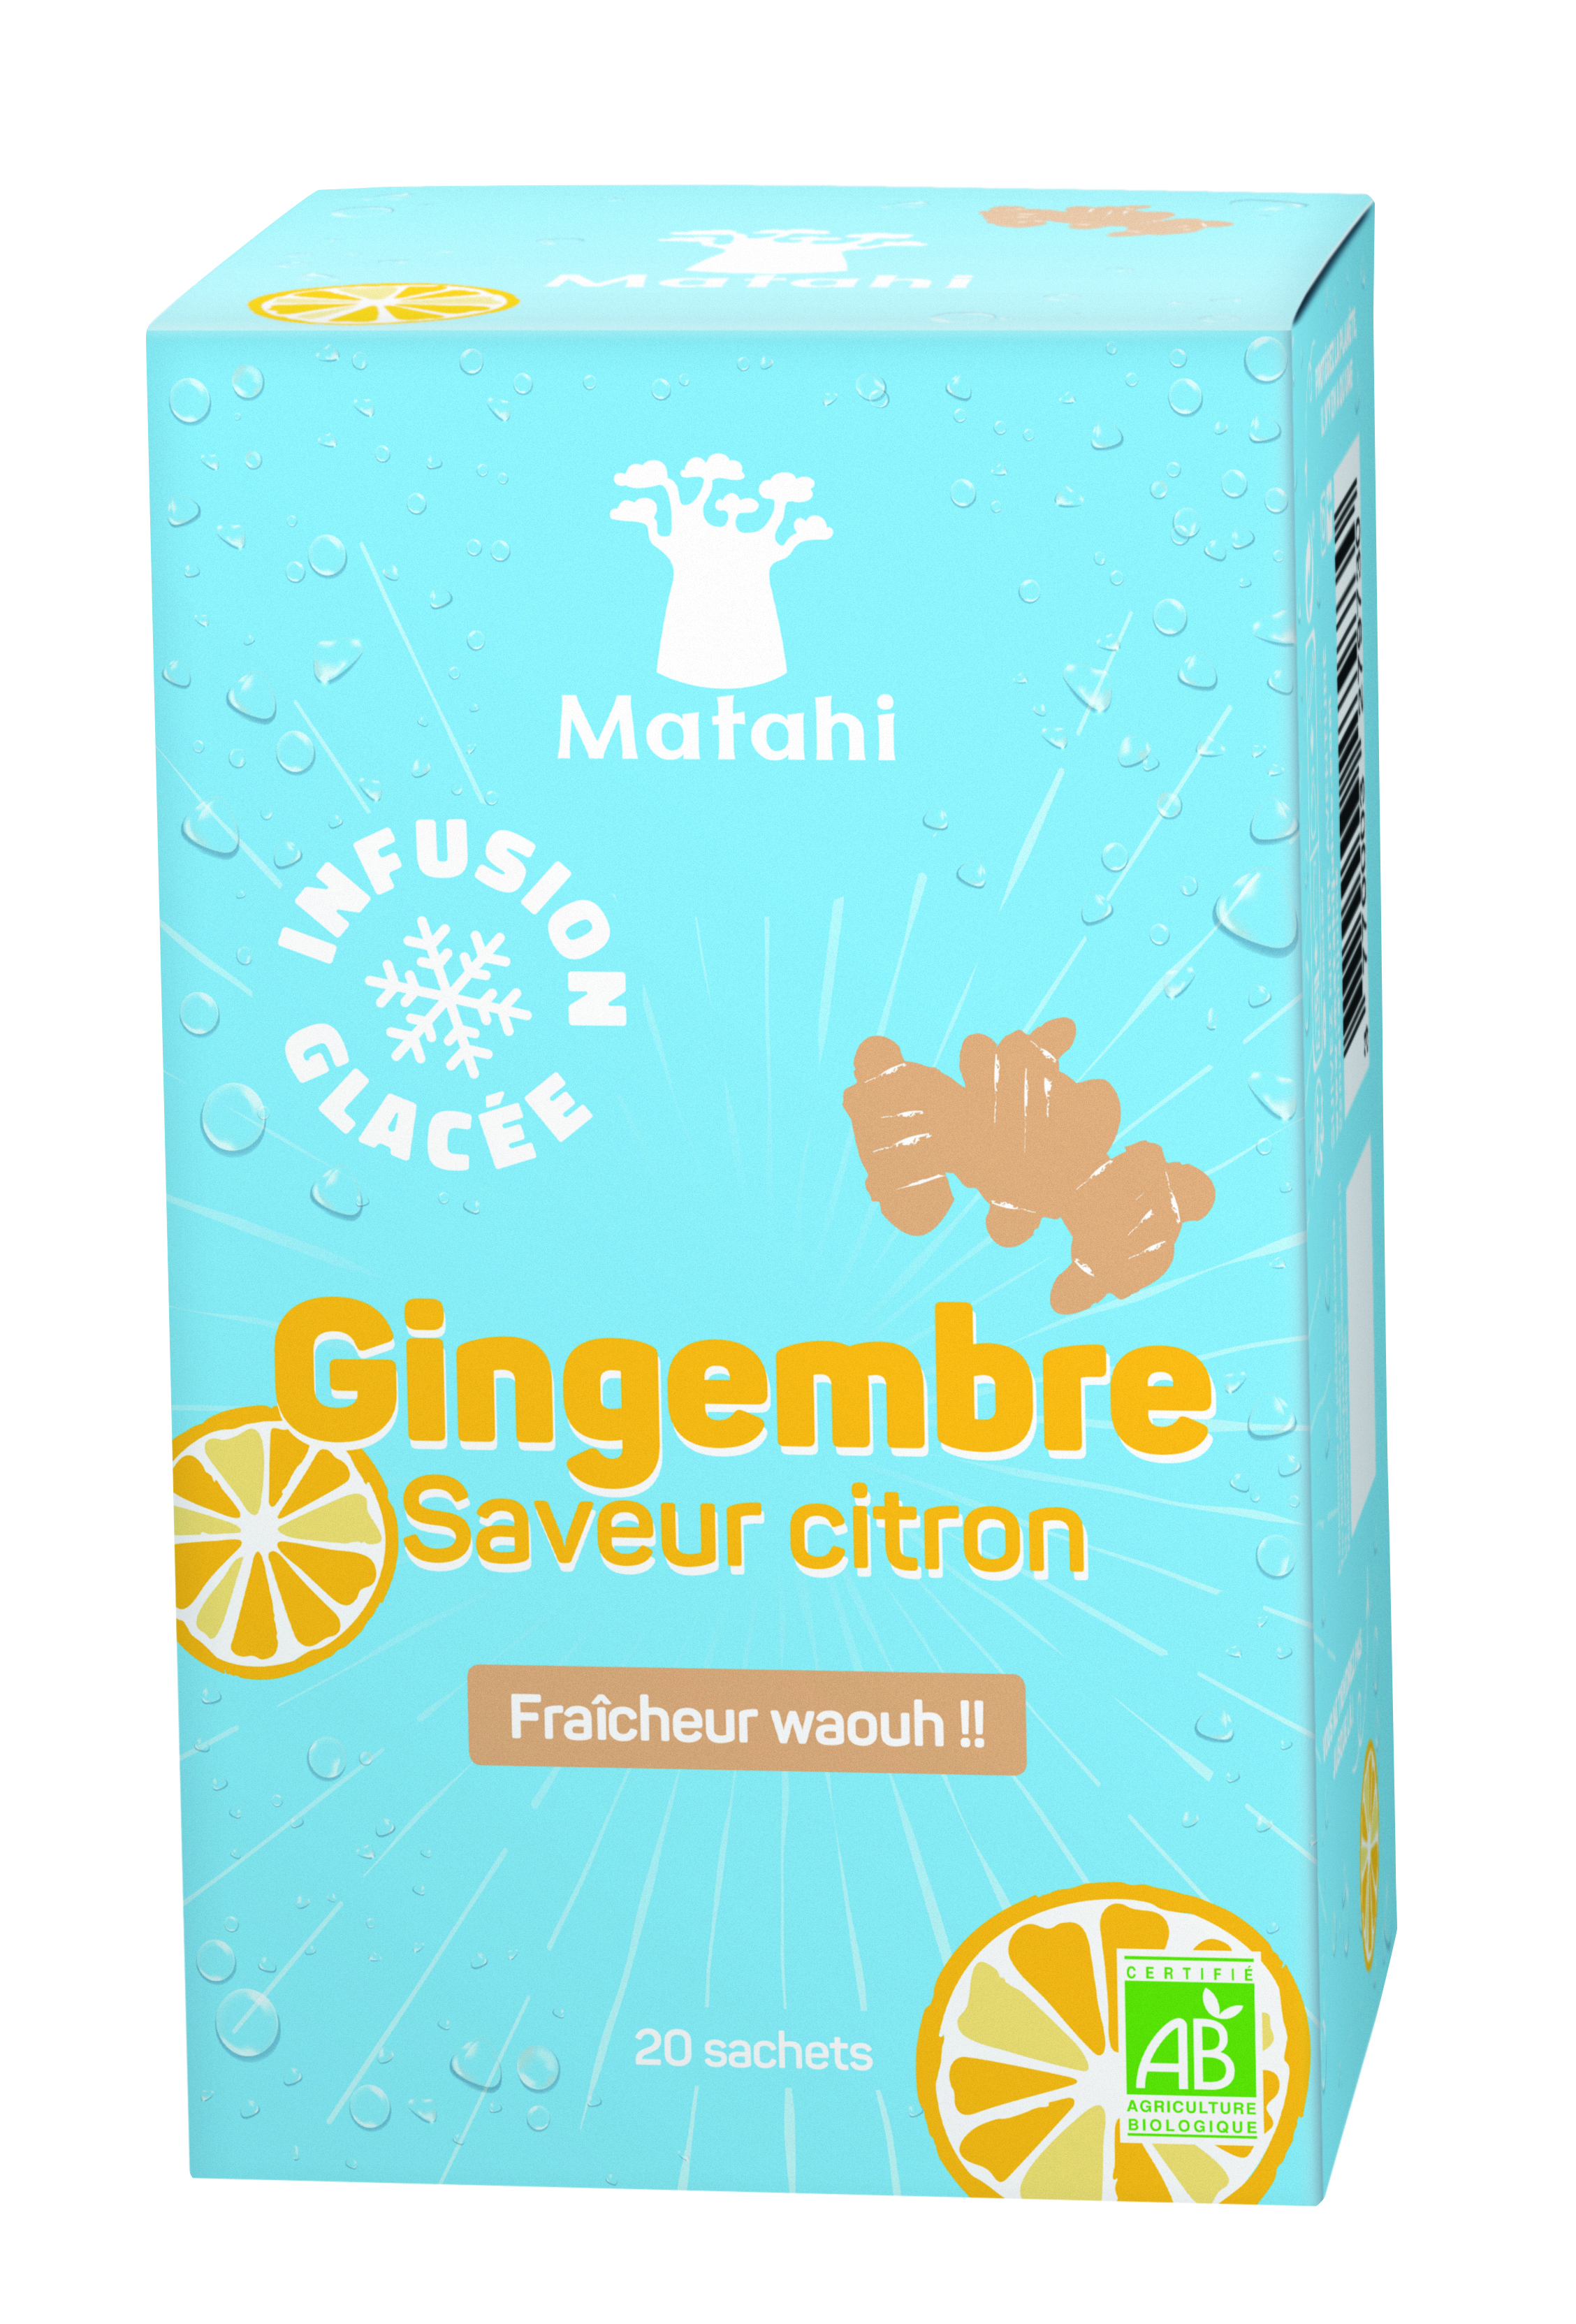 有机姜冰浸液柠檬味 (12 X 20 袋 X 2g) - Matahi